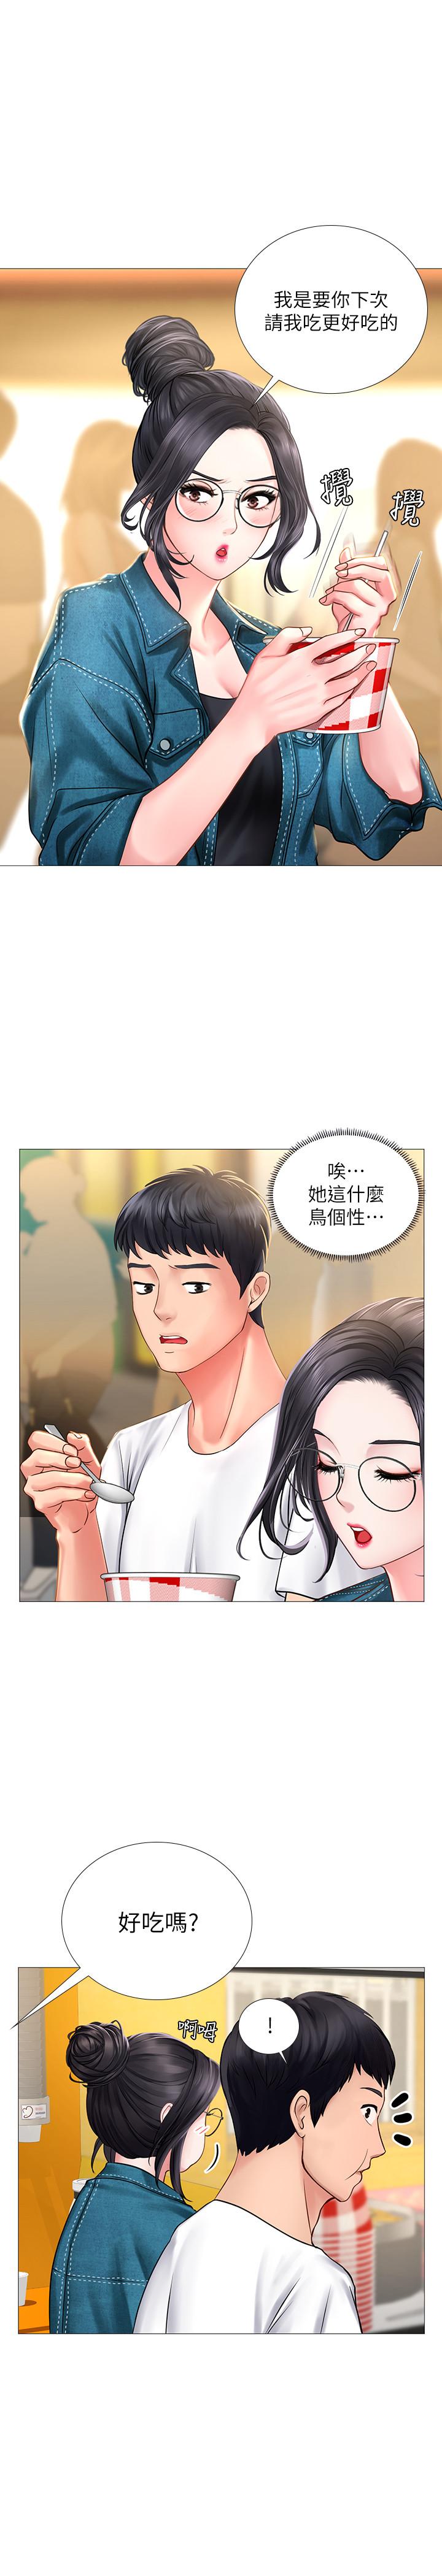 韩国污漫画 享樂補習街 第15话-姐姐成熟的应对方法 31